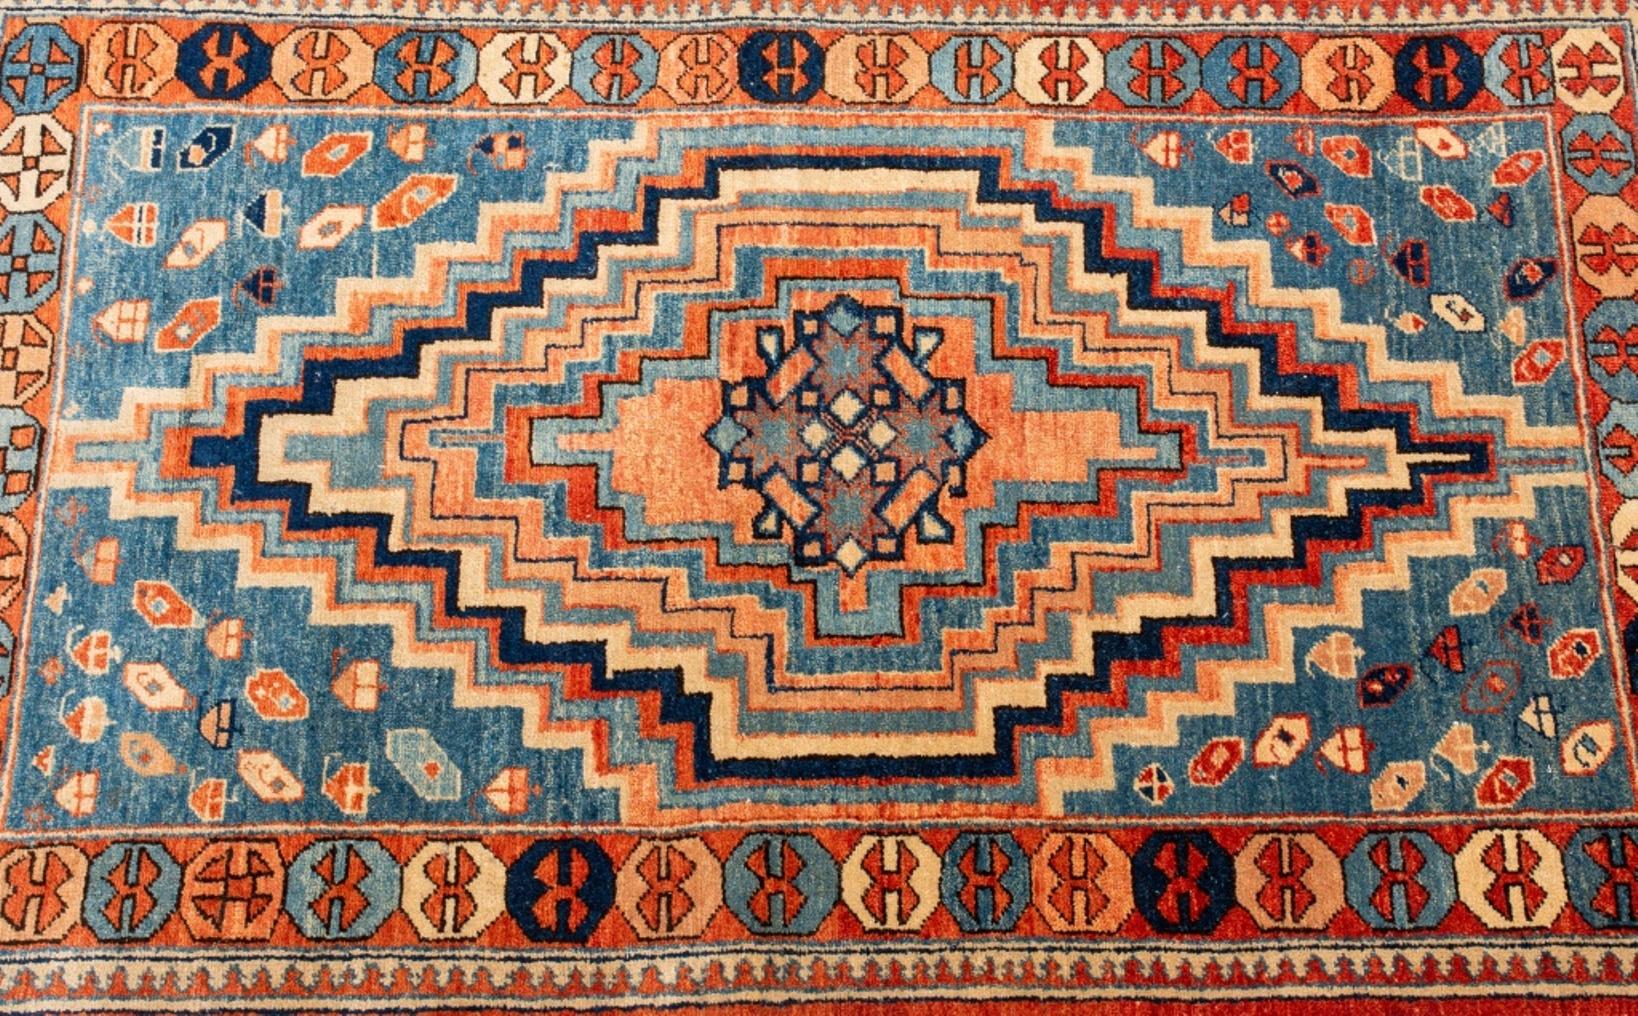 Tapis turc noué à la main, représentant un motif géométrique abrash, fabriqué par Rubin Carpets, fabriqué en Turquie.

Dimensions : 4' 10